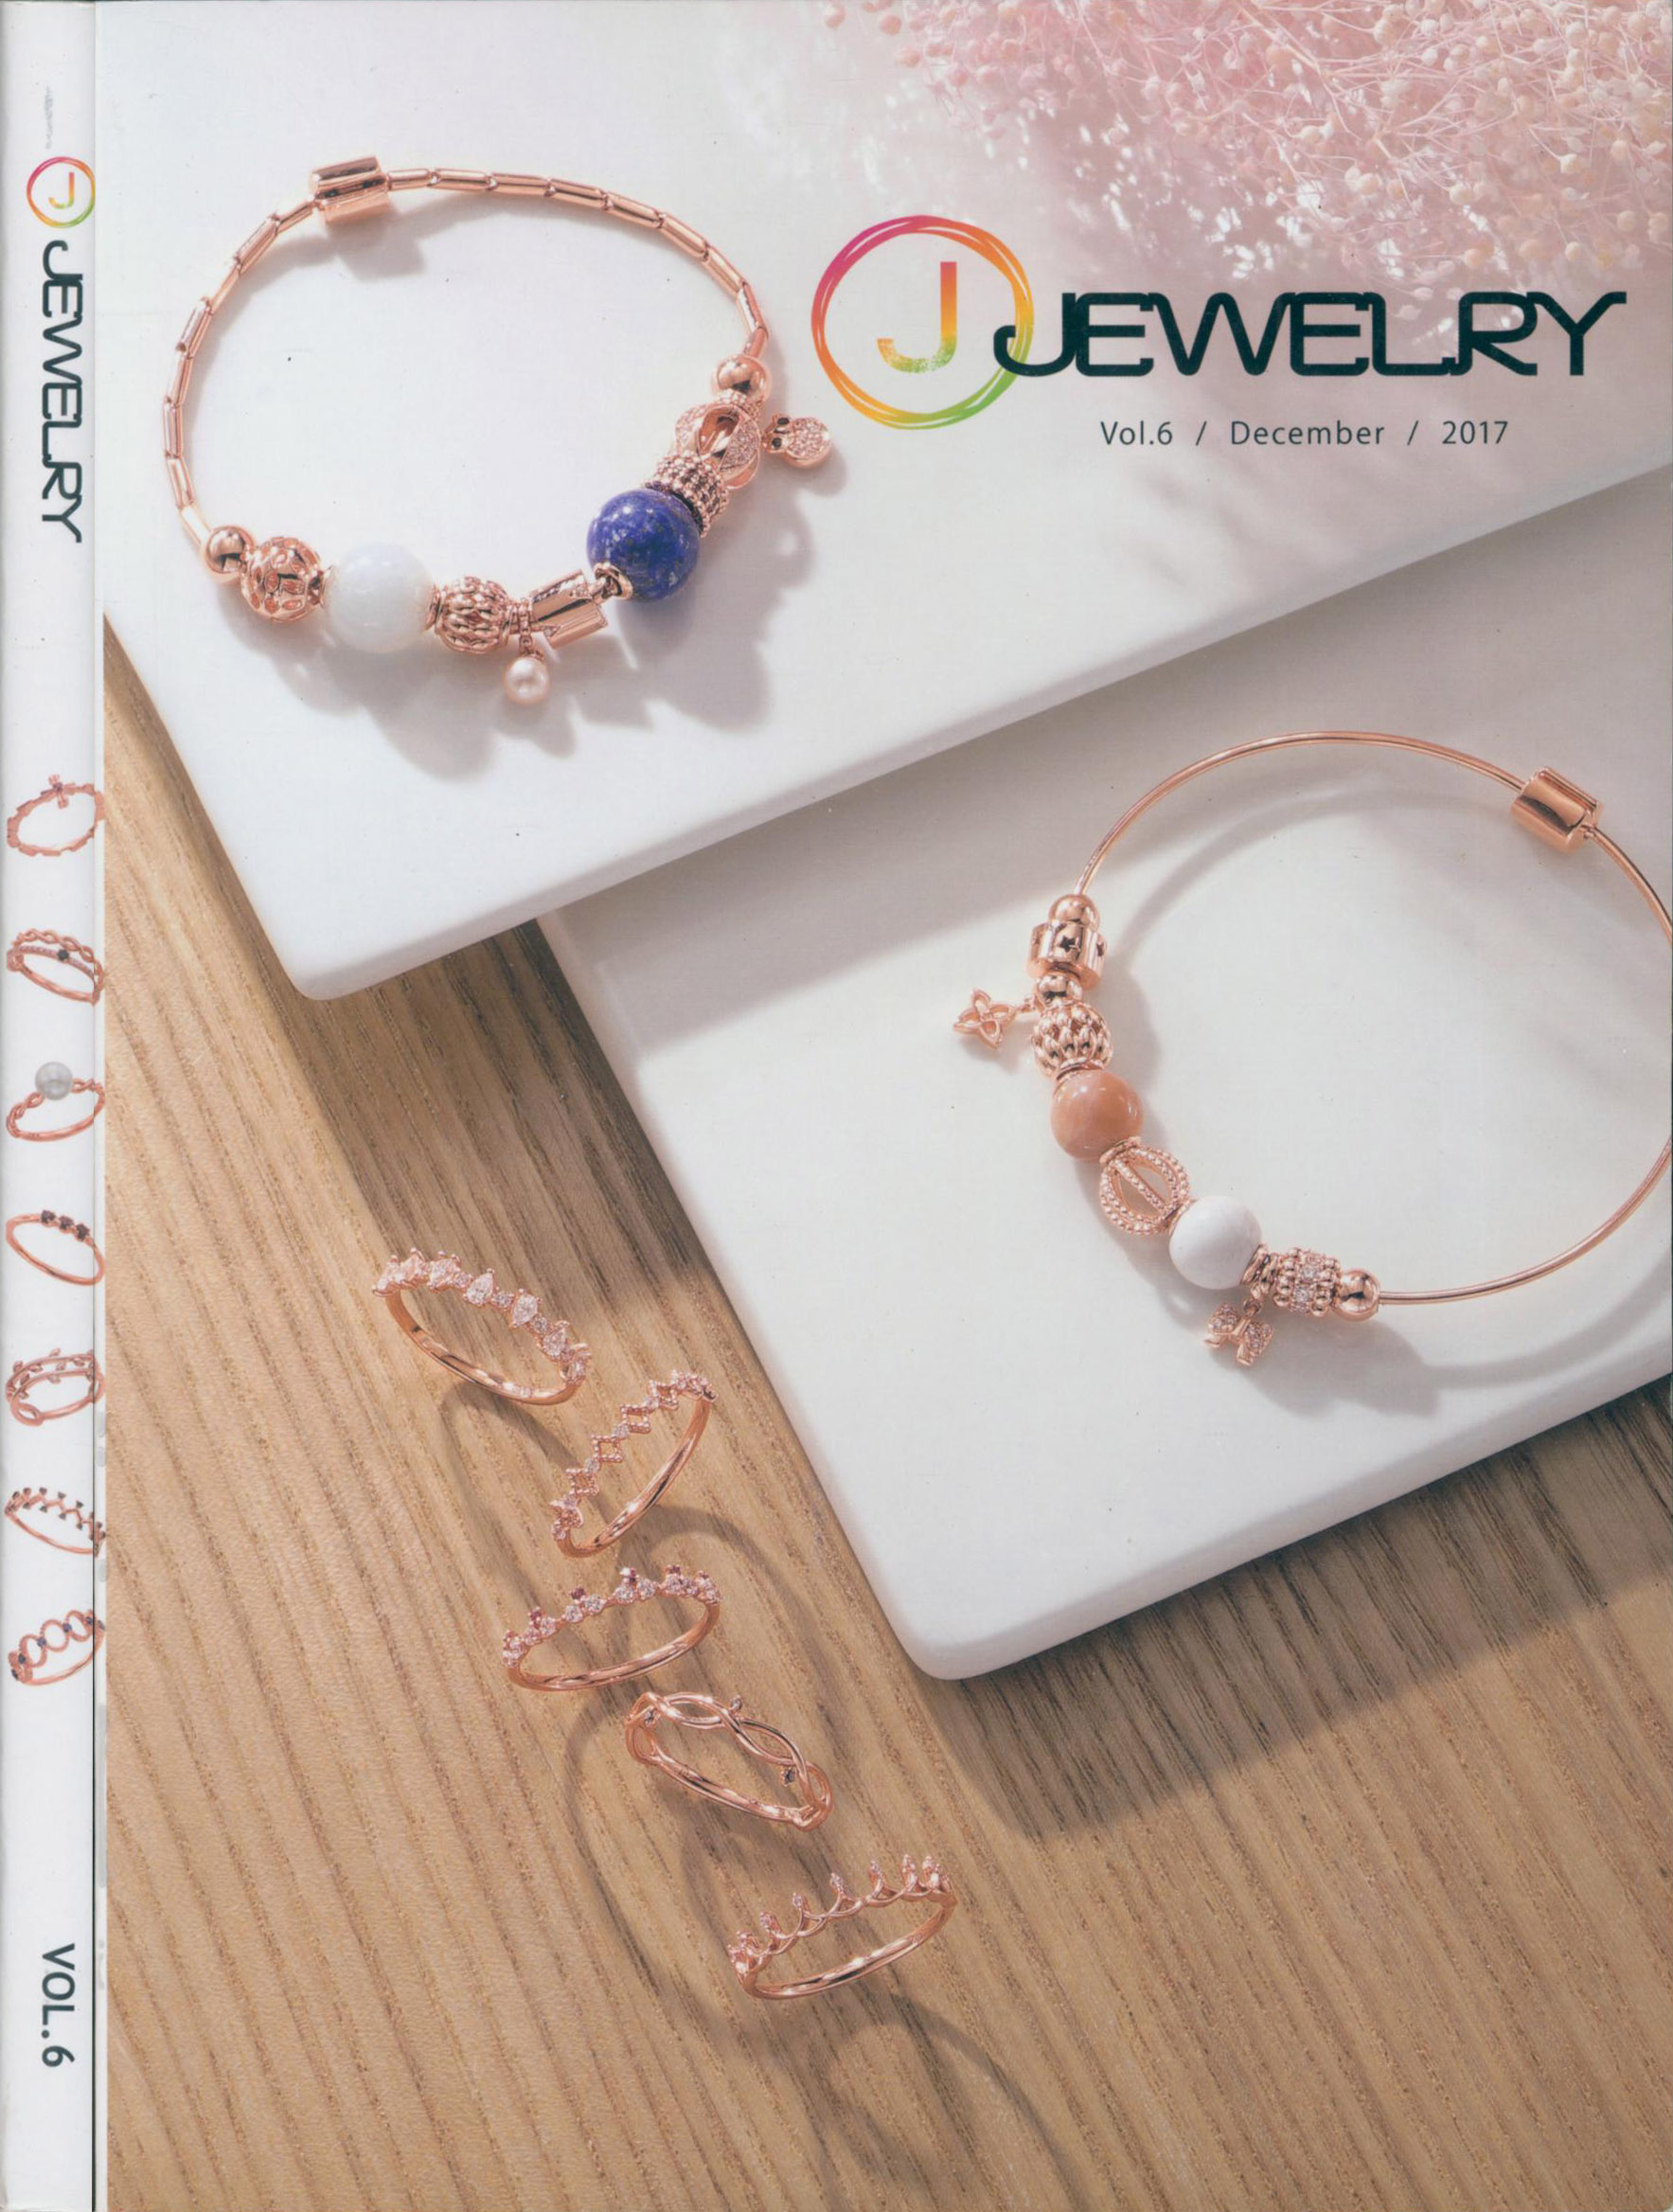 《J-Jewelry》韩国专业珠宝杂志2017年12月号